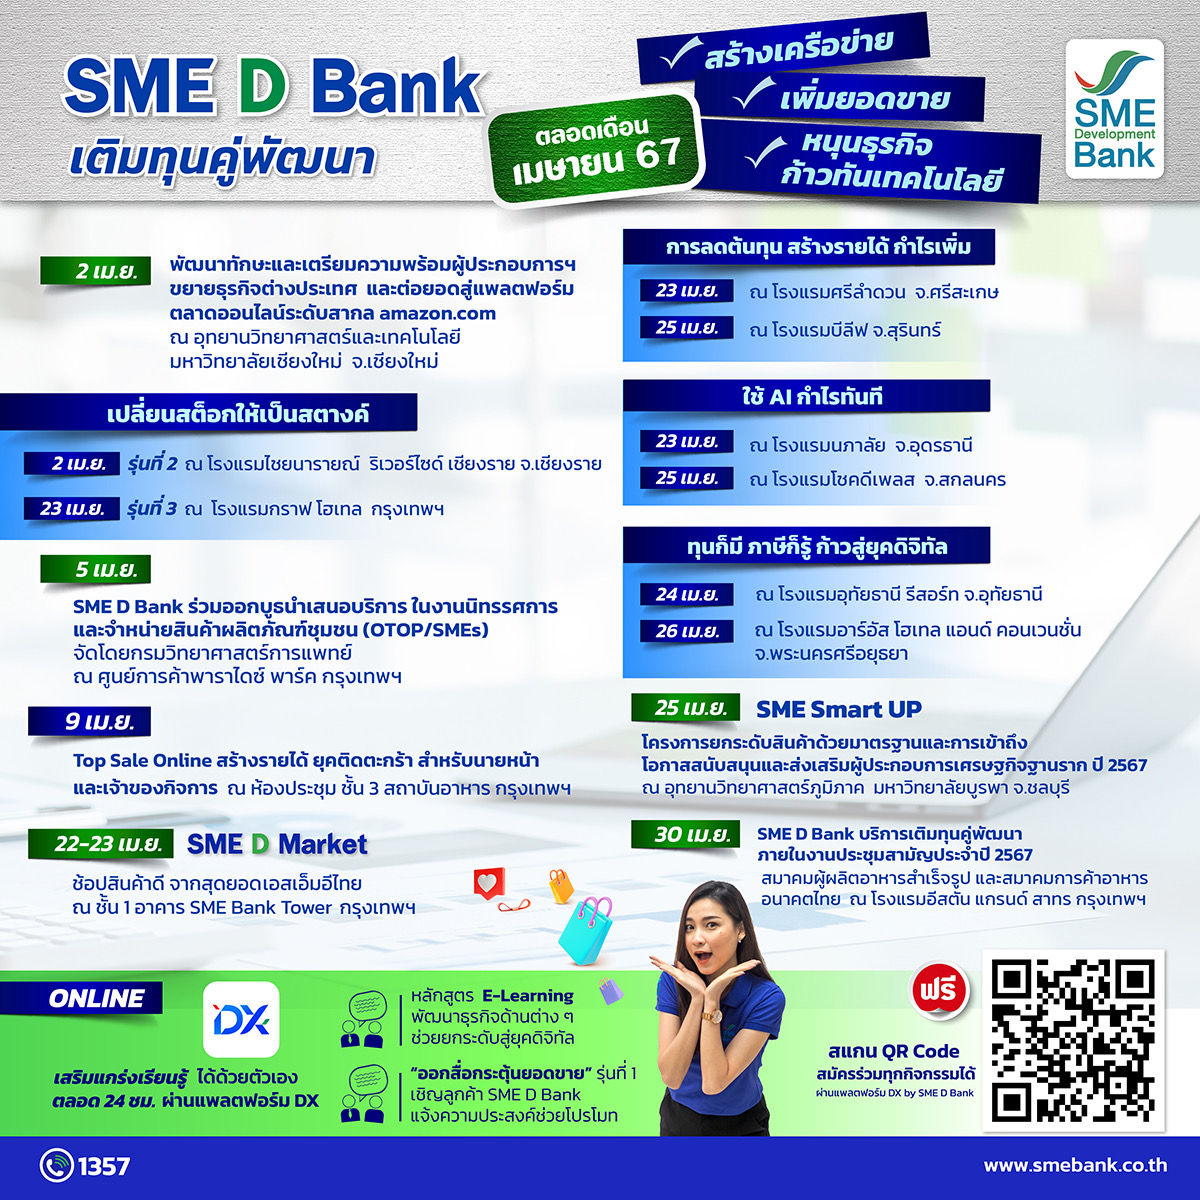 SME D Bank จัดขบวน ‘เติมทุนคู่พัฒนา’เสริมแกร่งเอสเอ็มอีตลอดเดือน เม.ย.